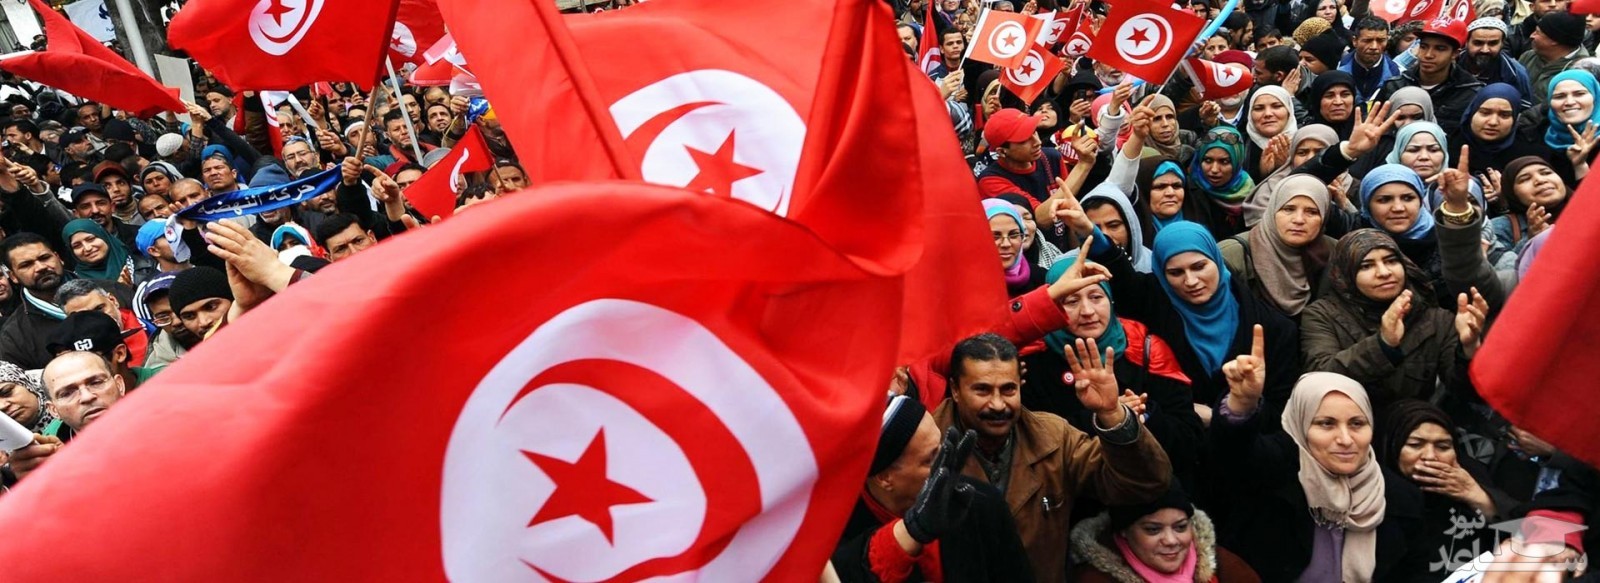 آشنایی با فرهنگ جالب مردم تونس